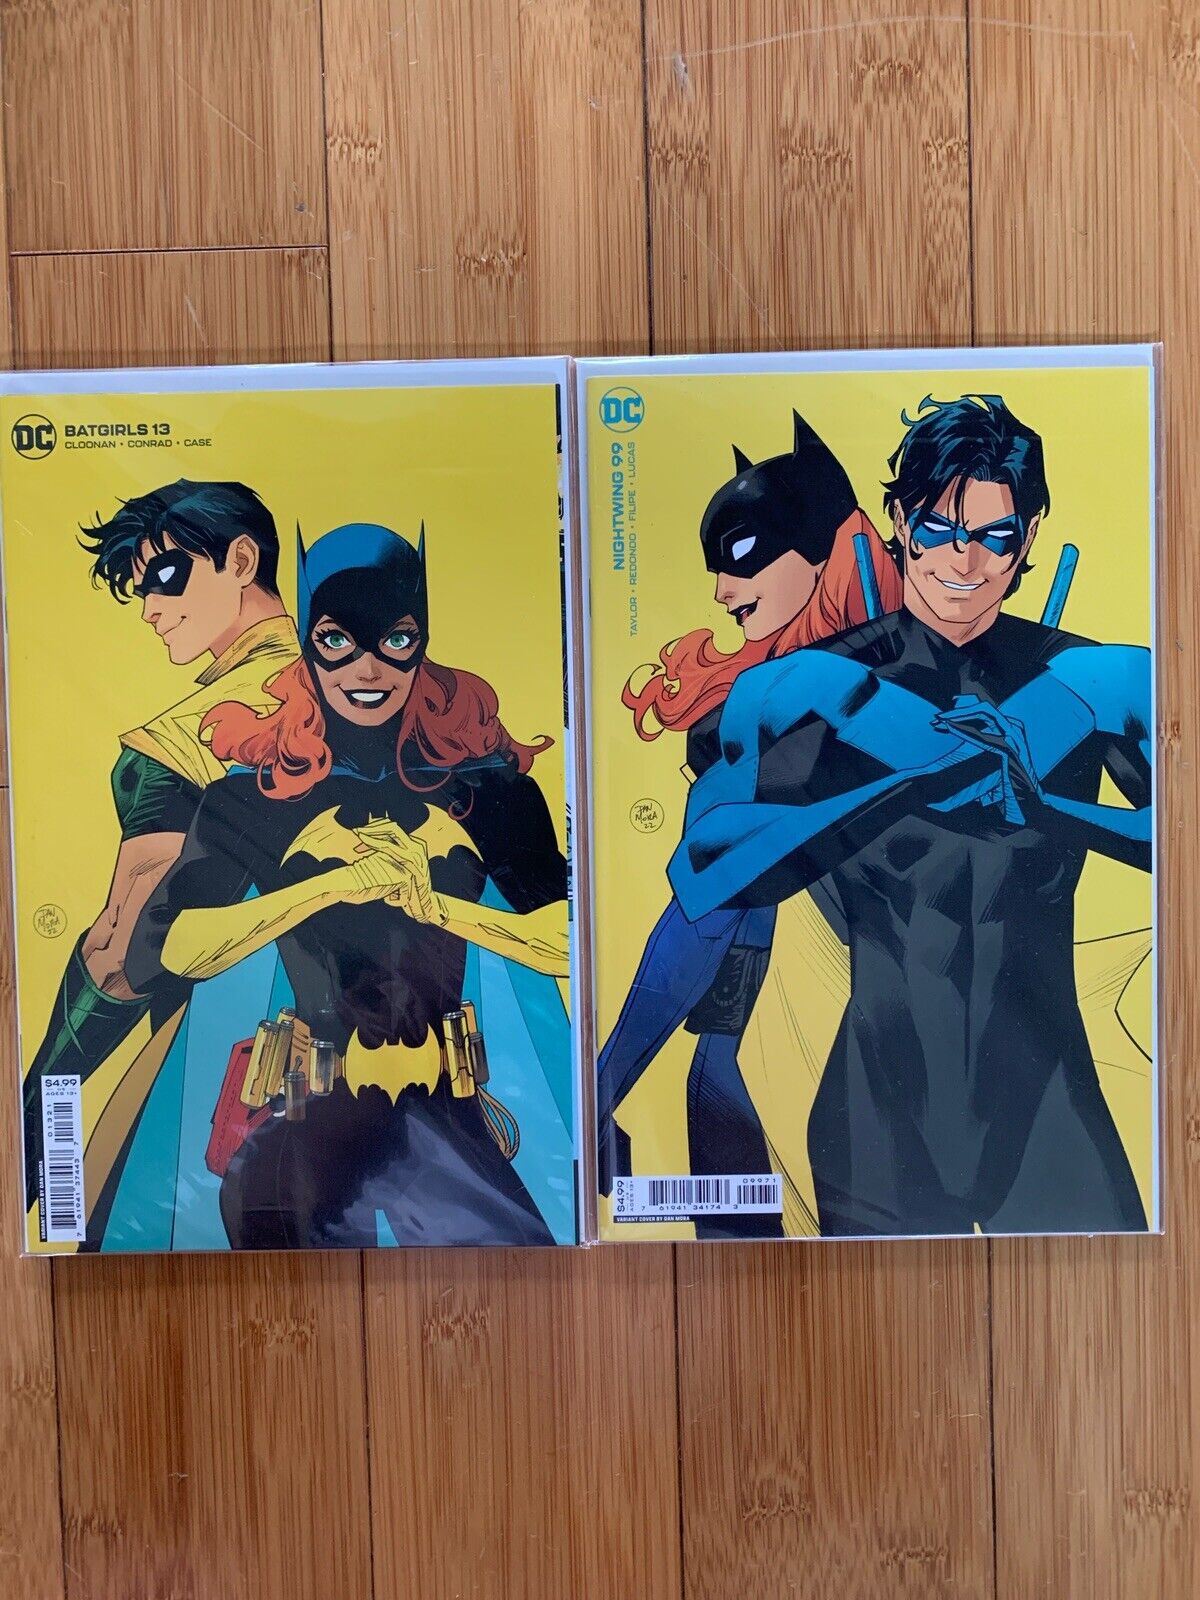 Nightwing #99 Batgirls #13 Dan Mora Variant DC Comics Comic Book Lot